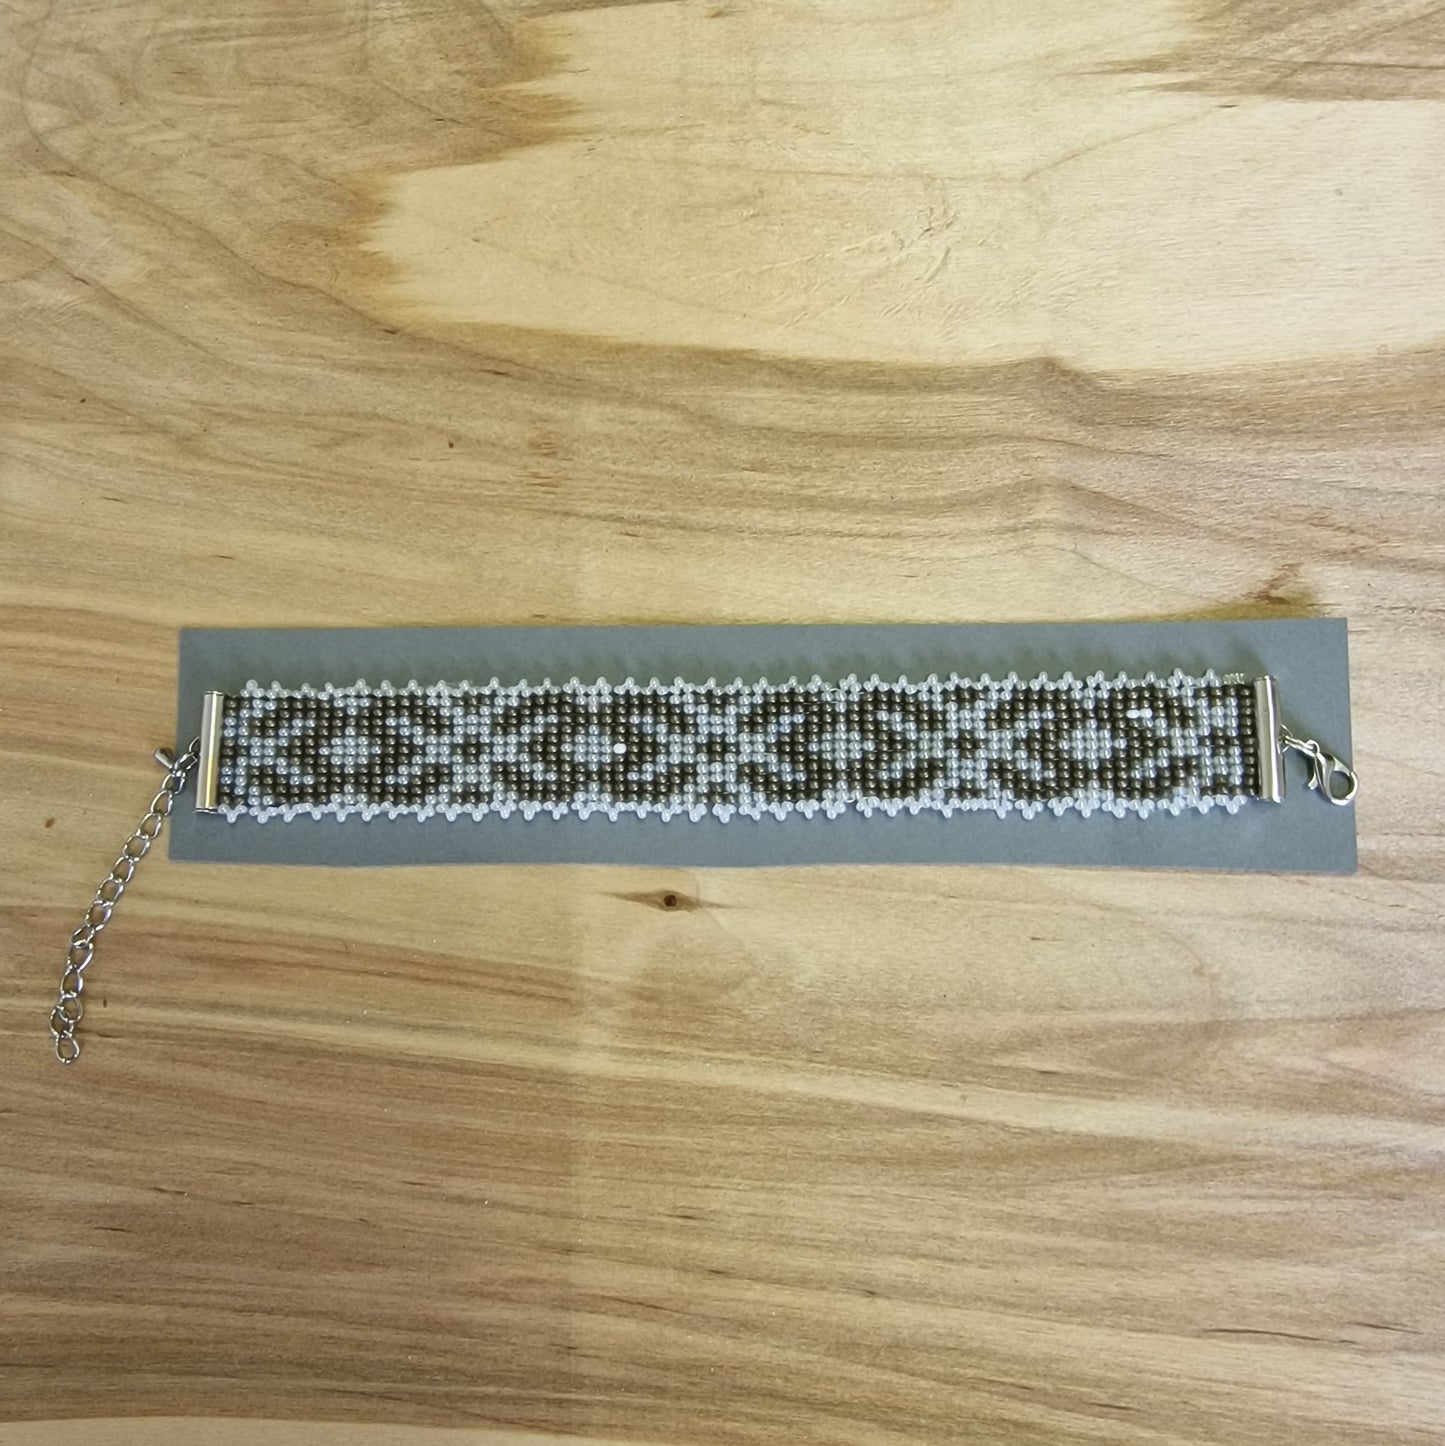 Beaded woven bracelet (SPKA 14)